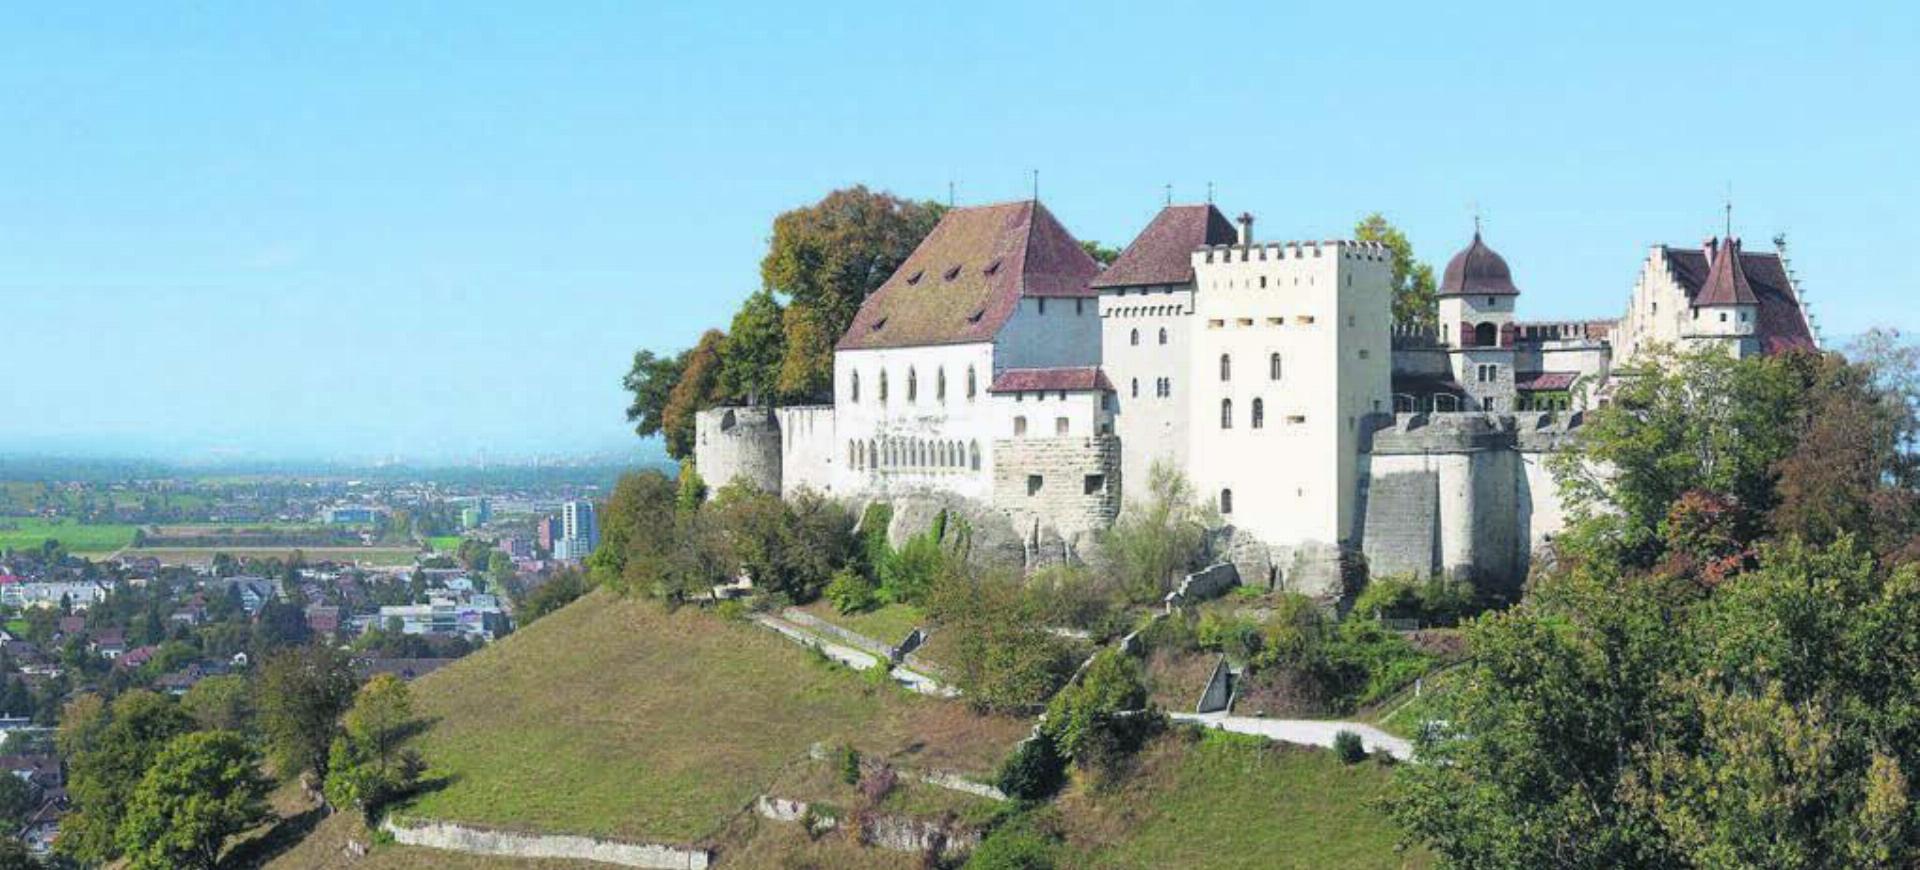 Kulturbauten wie das Schloss Lenzburg dürfen ab 15. April wieder nachts von aussen beleuchtet werden. Bild: Museum Aargau